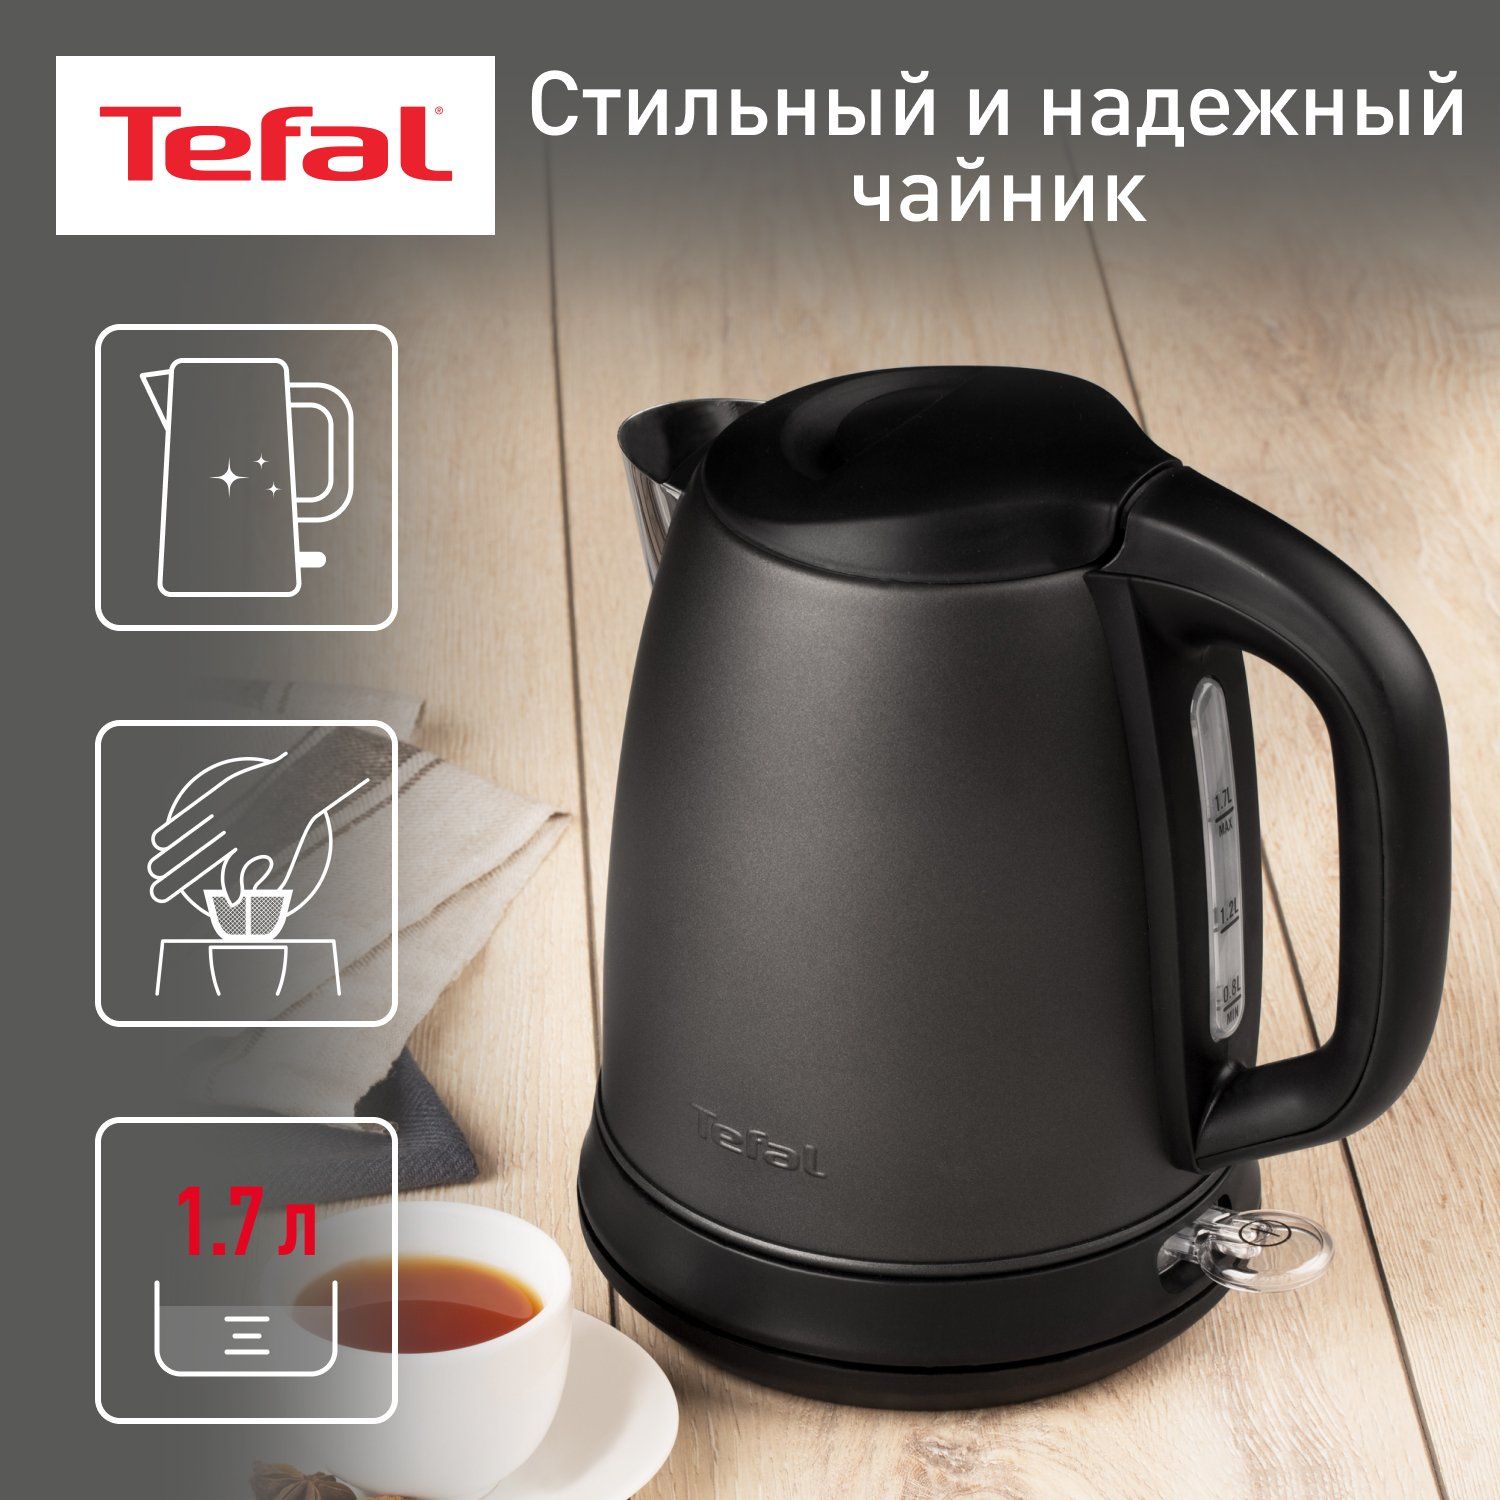 Чайник электрический Tefal Confidence KI270930, 1.7 л, графит/черный фильтр tefal zr009002